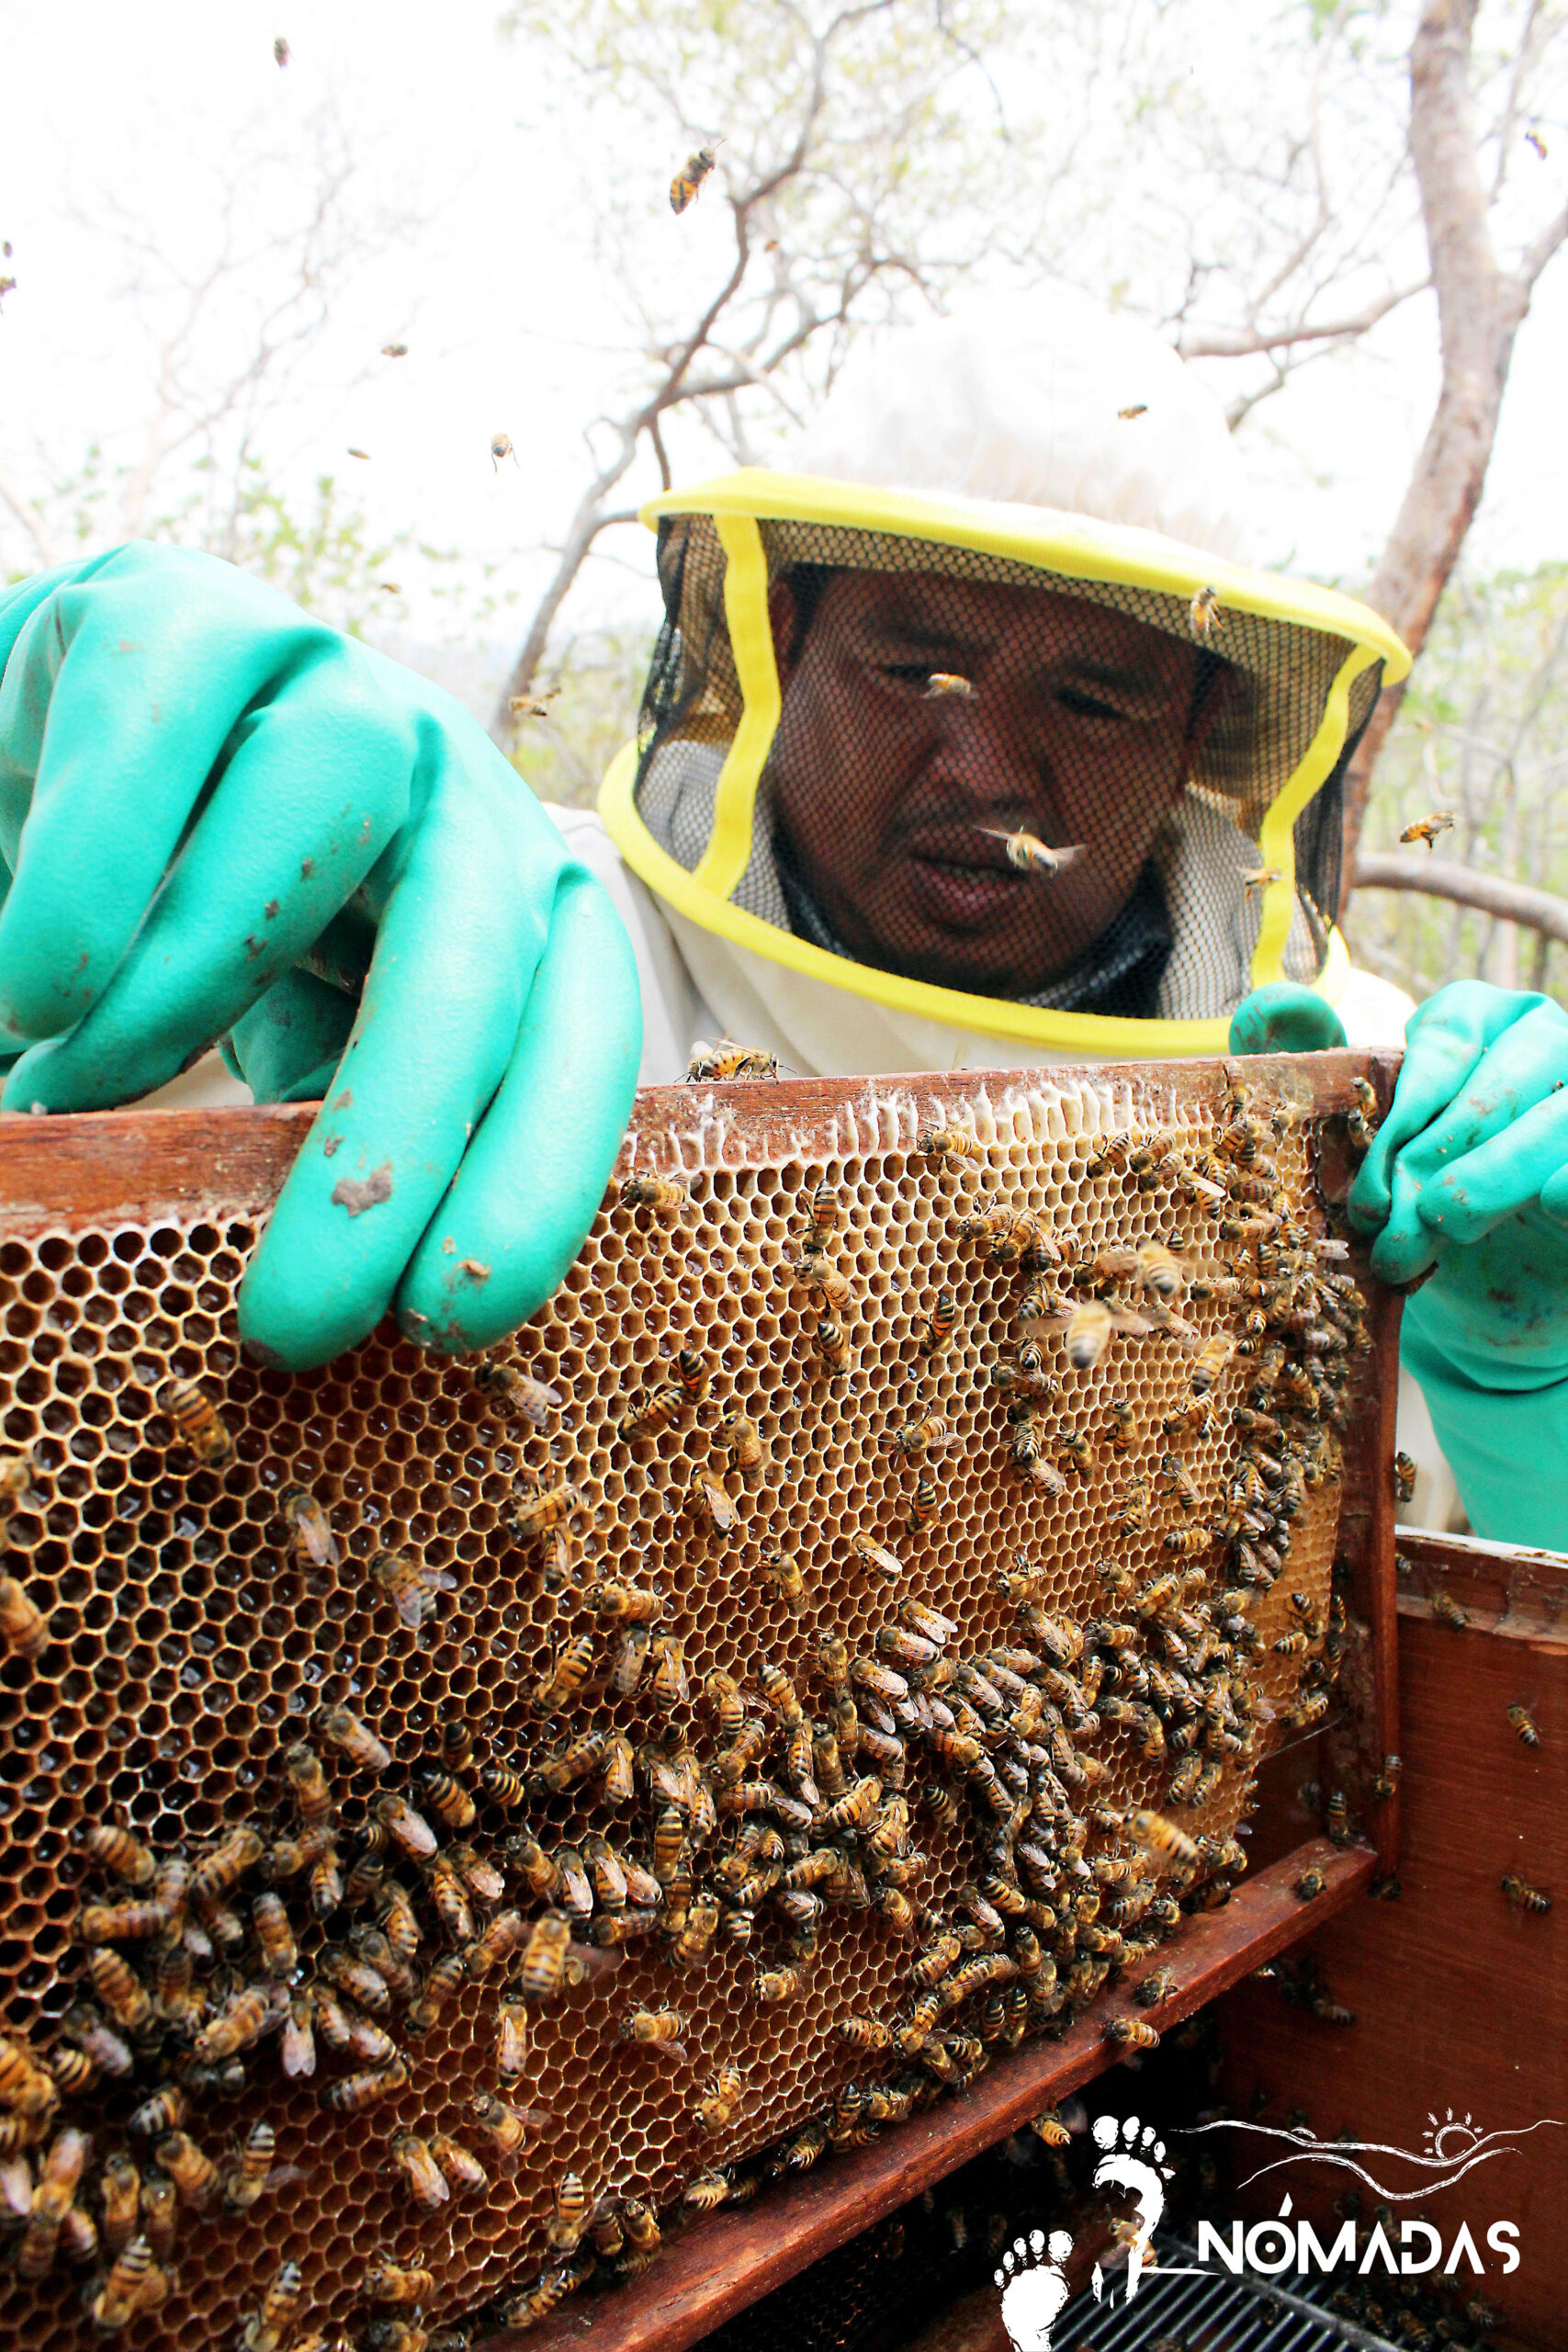 Miel pura de abeja: Auténtica miel artesanal - Pico y Tallo